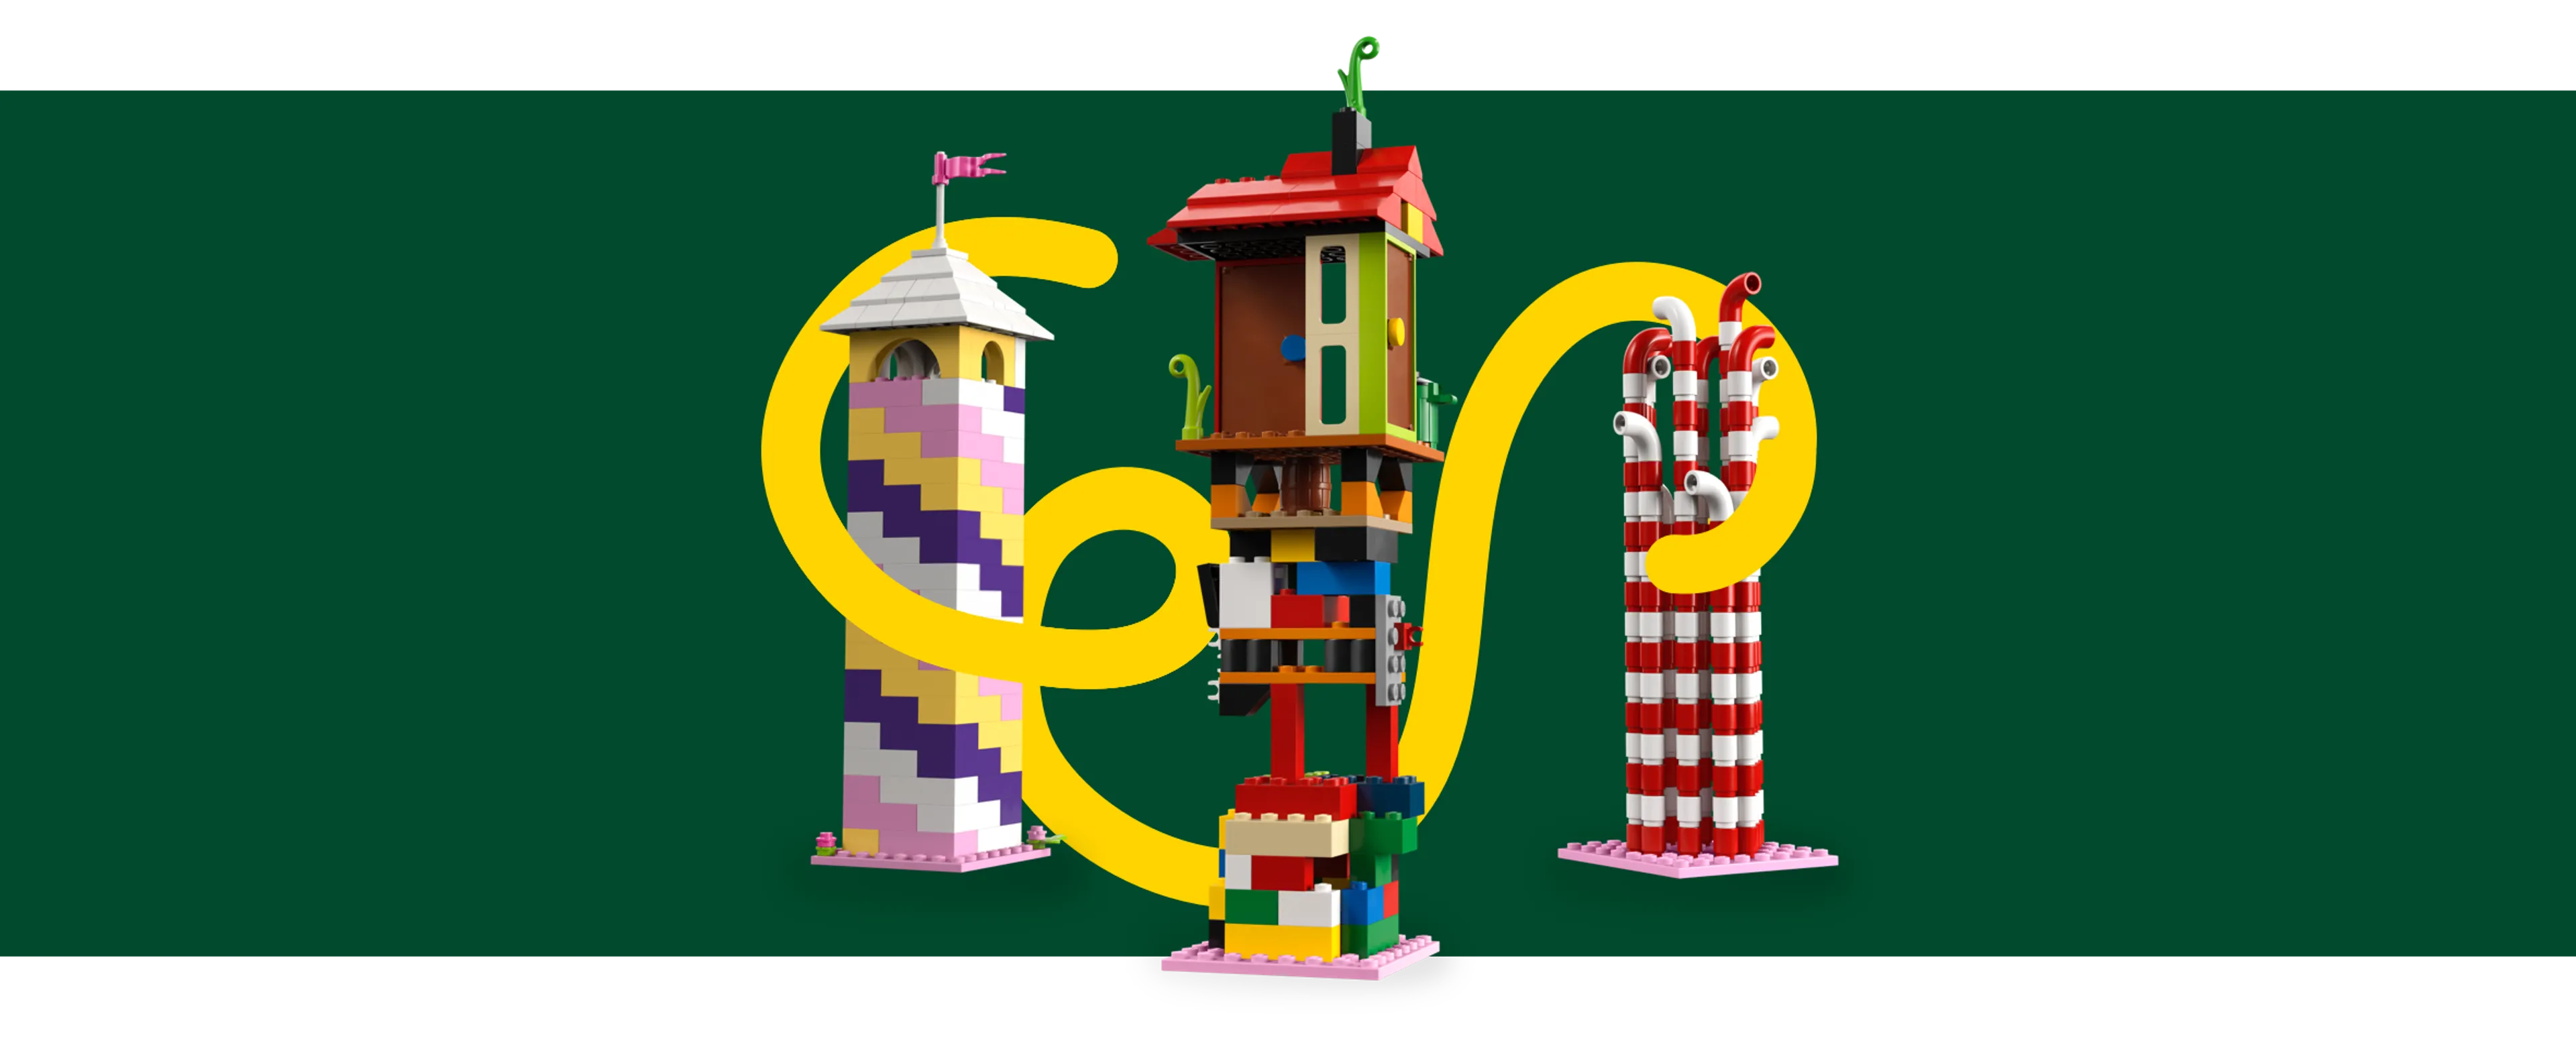 Une expérience mémorable avec la construction de la tour Lego